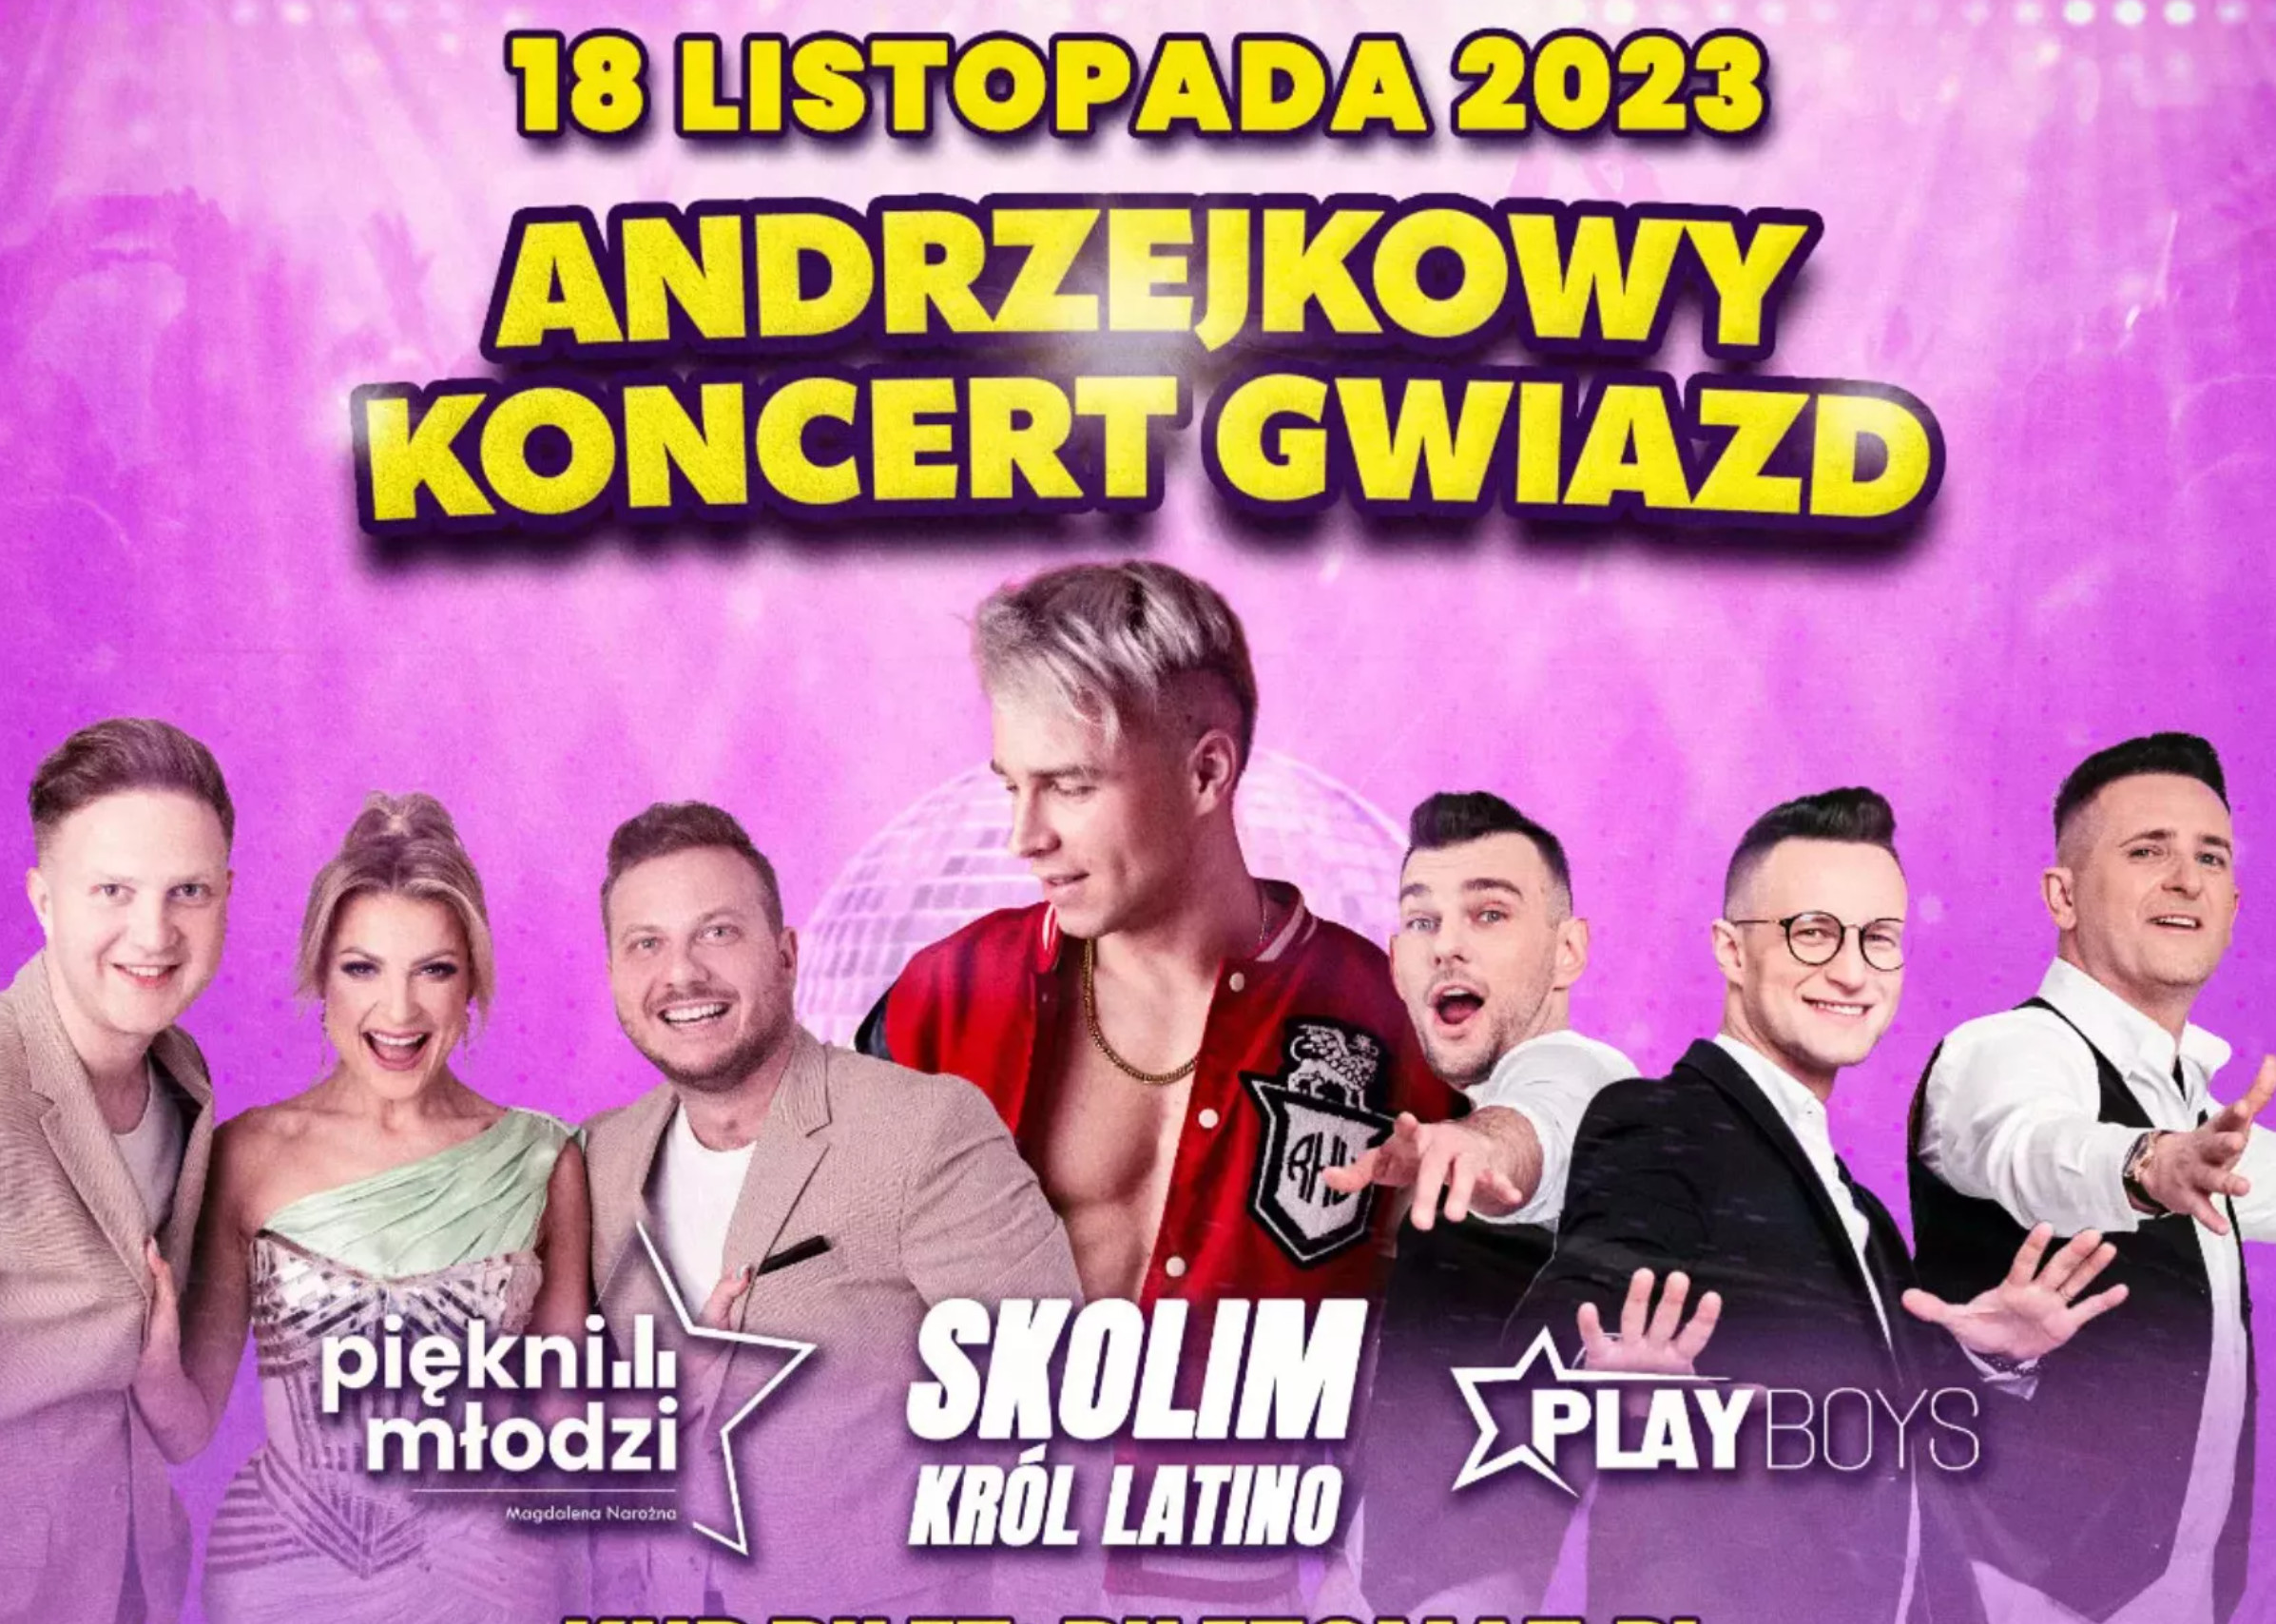 Andrzejkowa Noc Gwiazd Disco Polo w Opolu już 18 listopada! Kto wystąpi?!